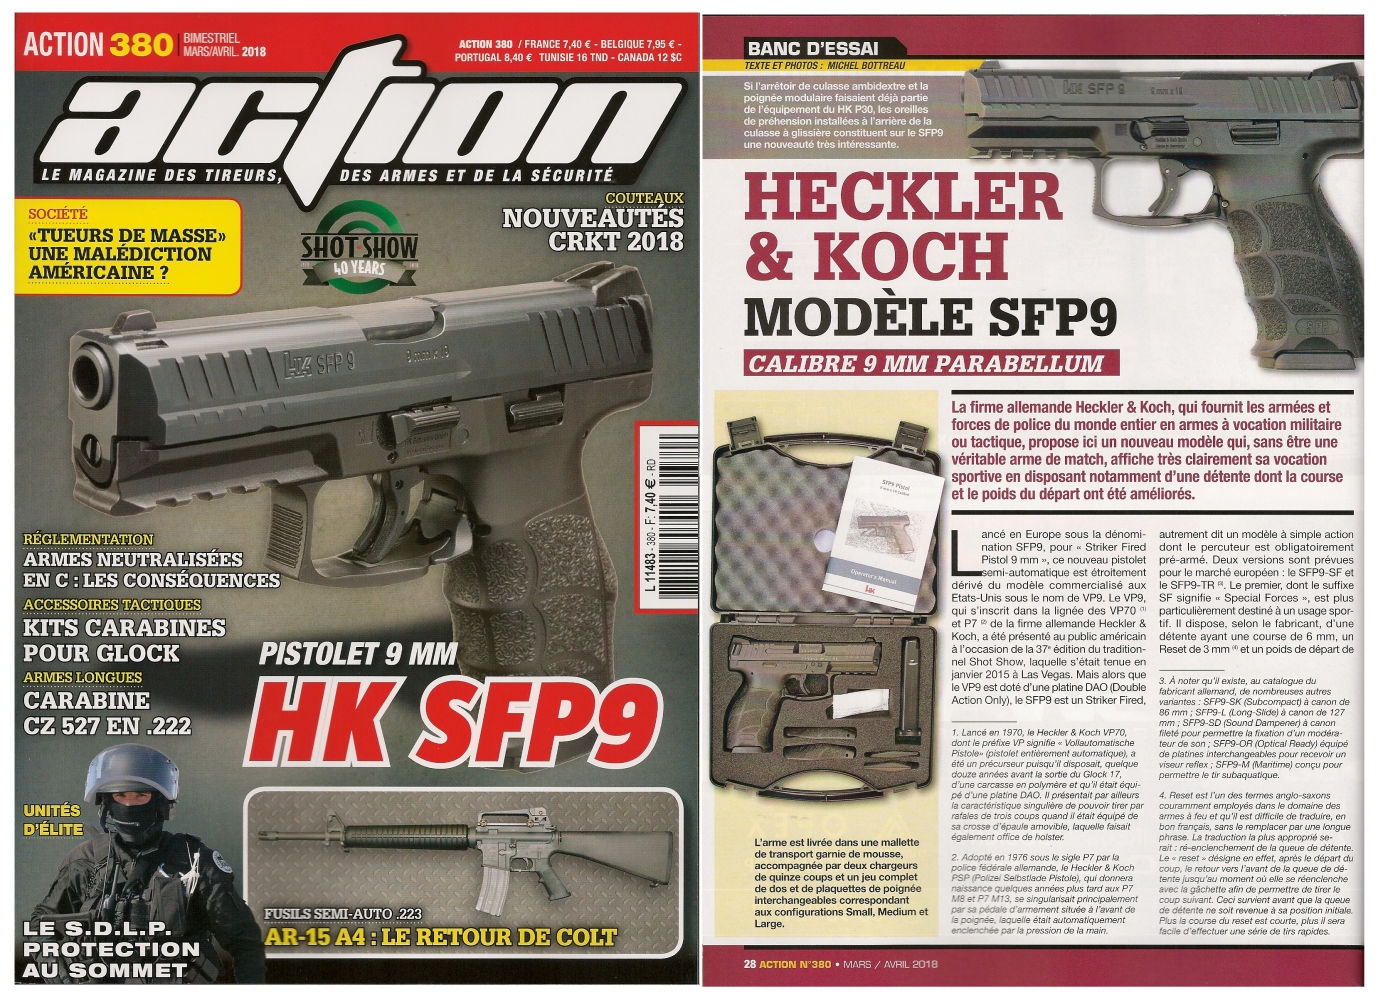 Le banc d’essai du pistolet Heckler & Koch modèle SFP9 a été publié sur 6 pages dans le magazine Action n° 380 (mars/avril 2018). 